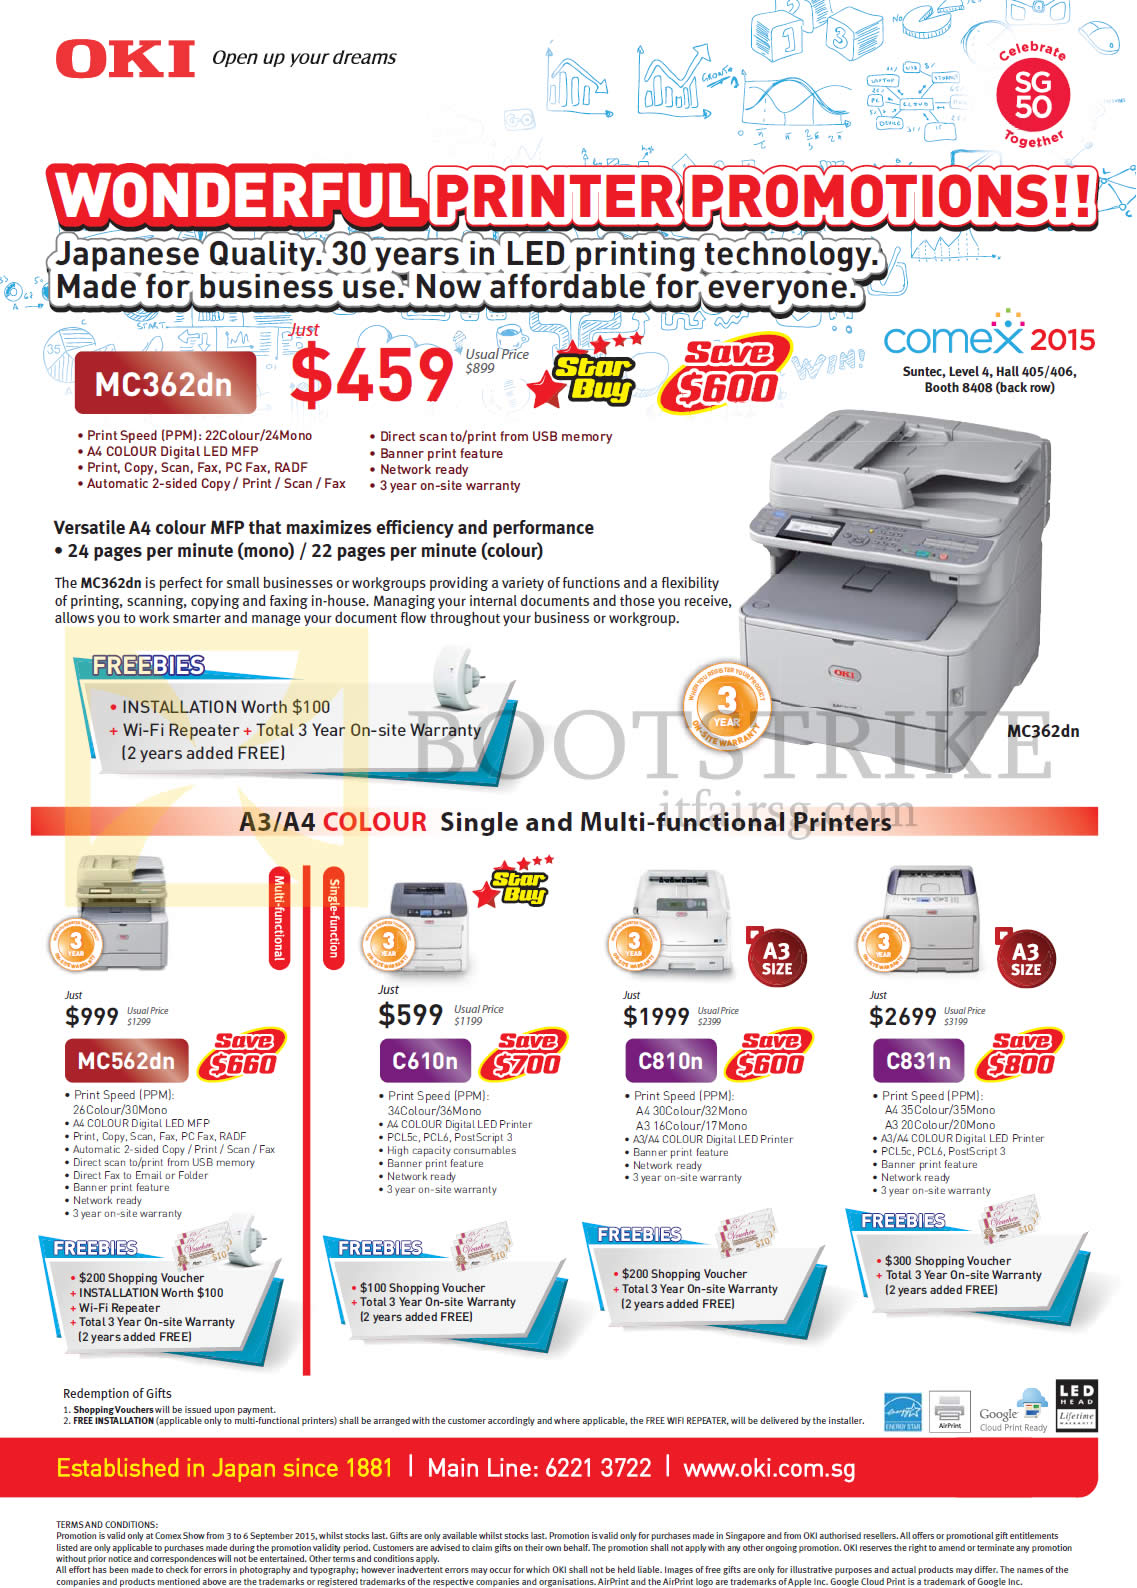 COMEX 2015 price list image brochure of OKI Printers LED MC362dn, MC562dn, C610n, C810n, C831n